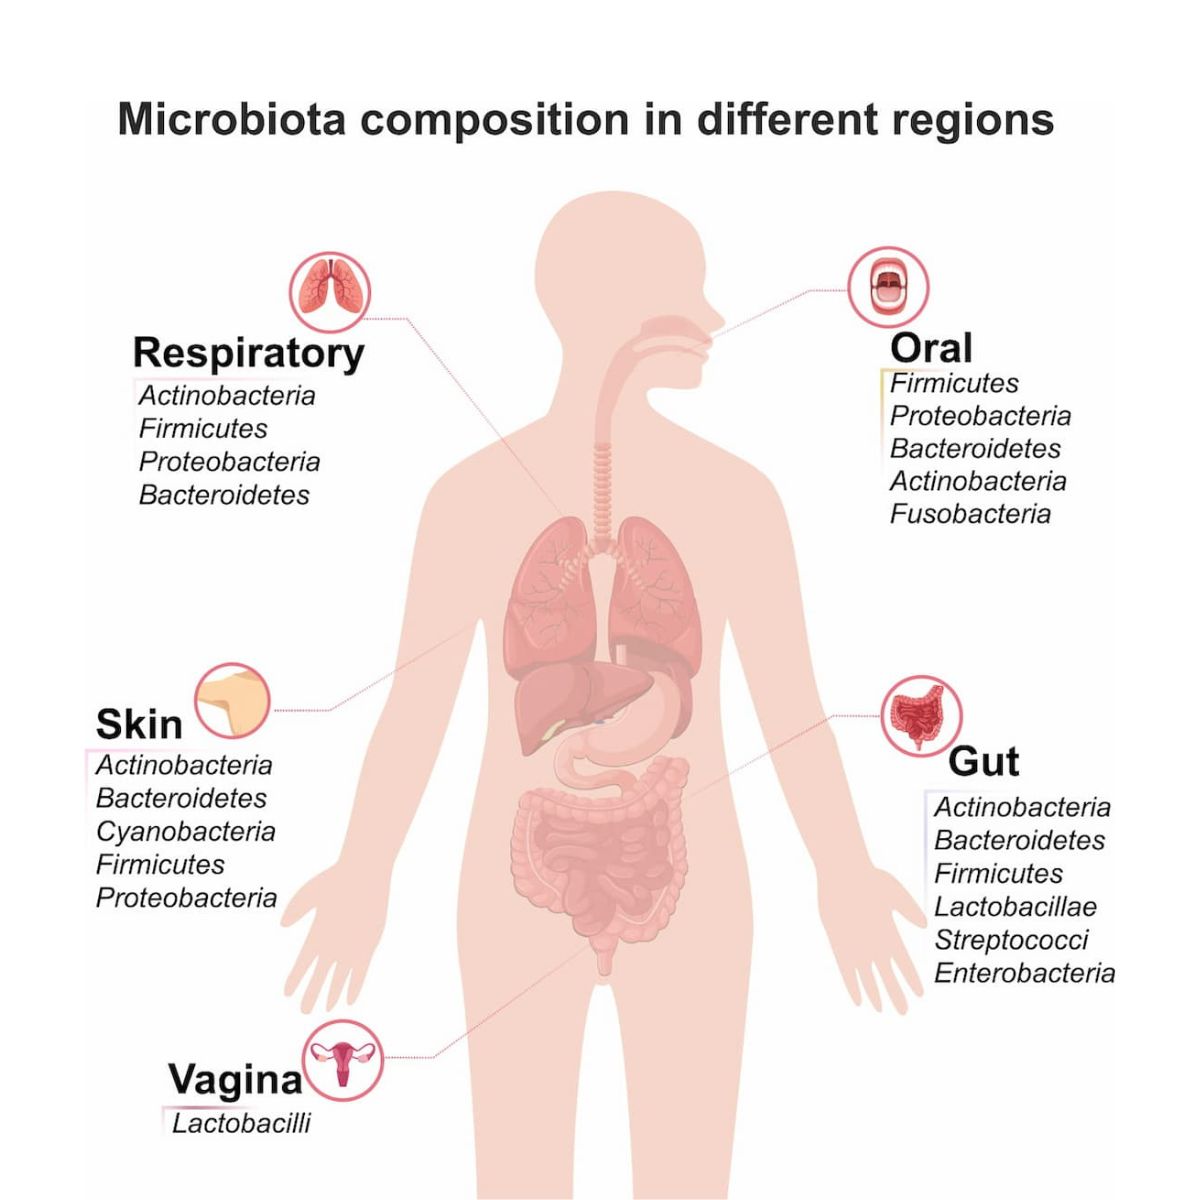 Cách hệ vi sinh vật trên cơ thể người và các loại vi khuẩn chiếm ưu thế trong khoang miệng, đường hô hấp, da, ruột và âm đạo.